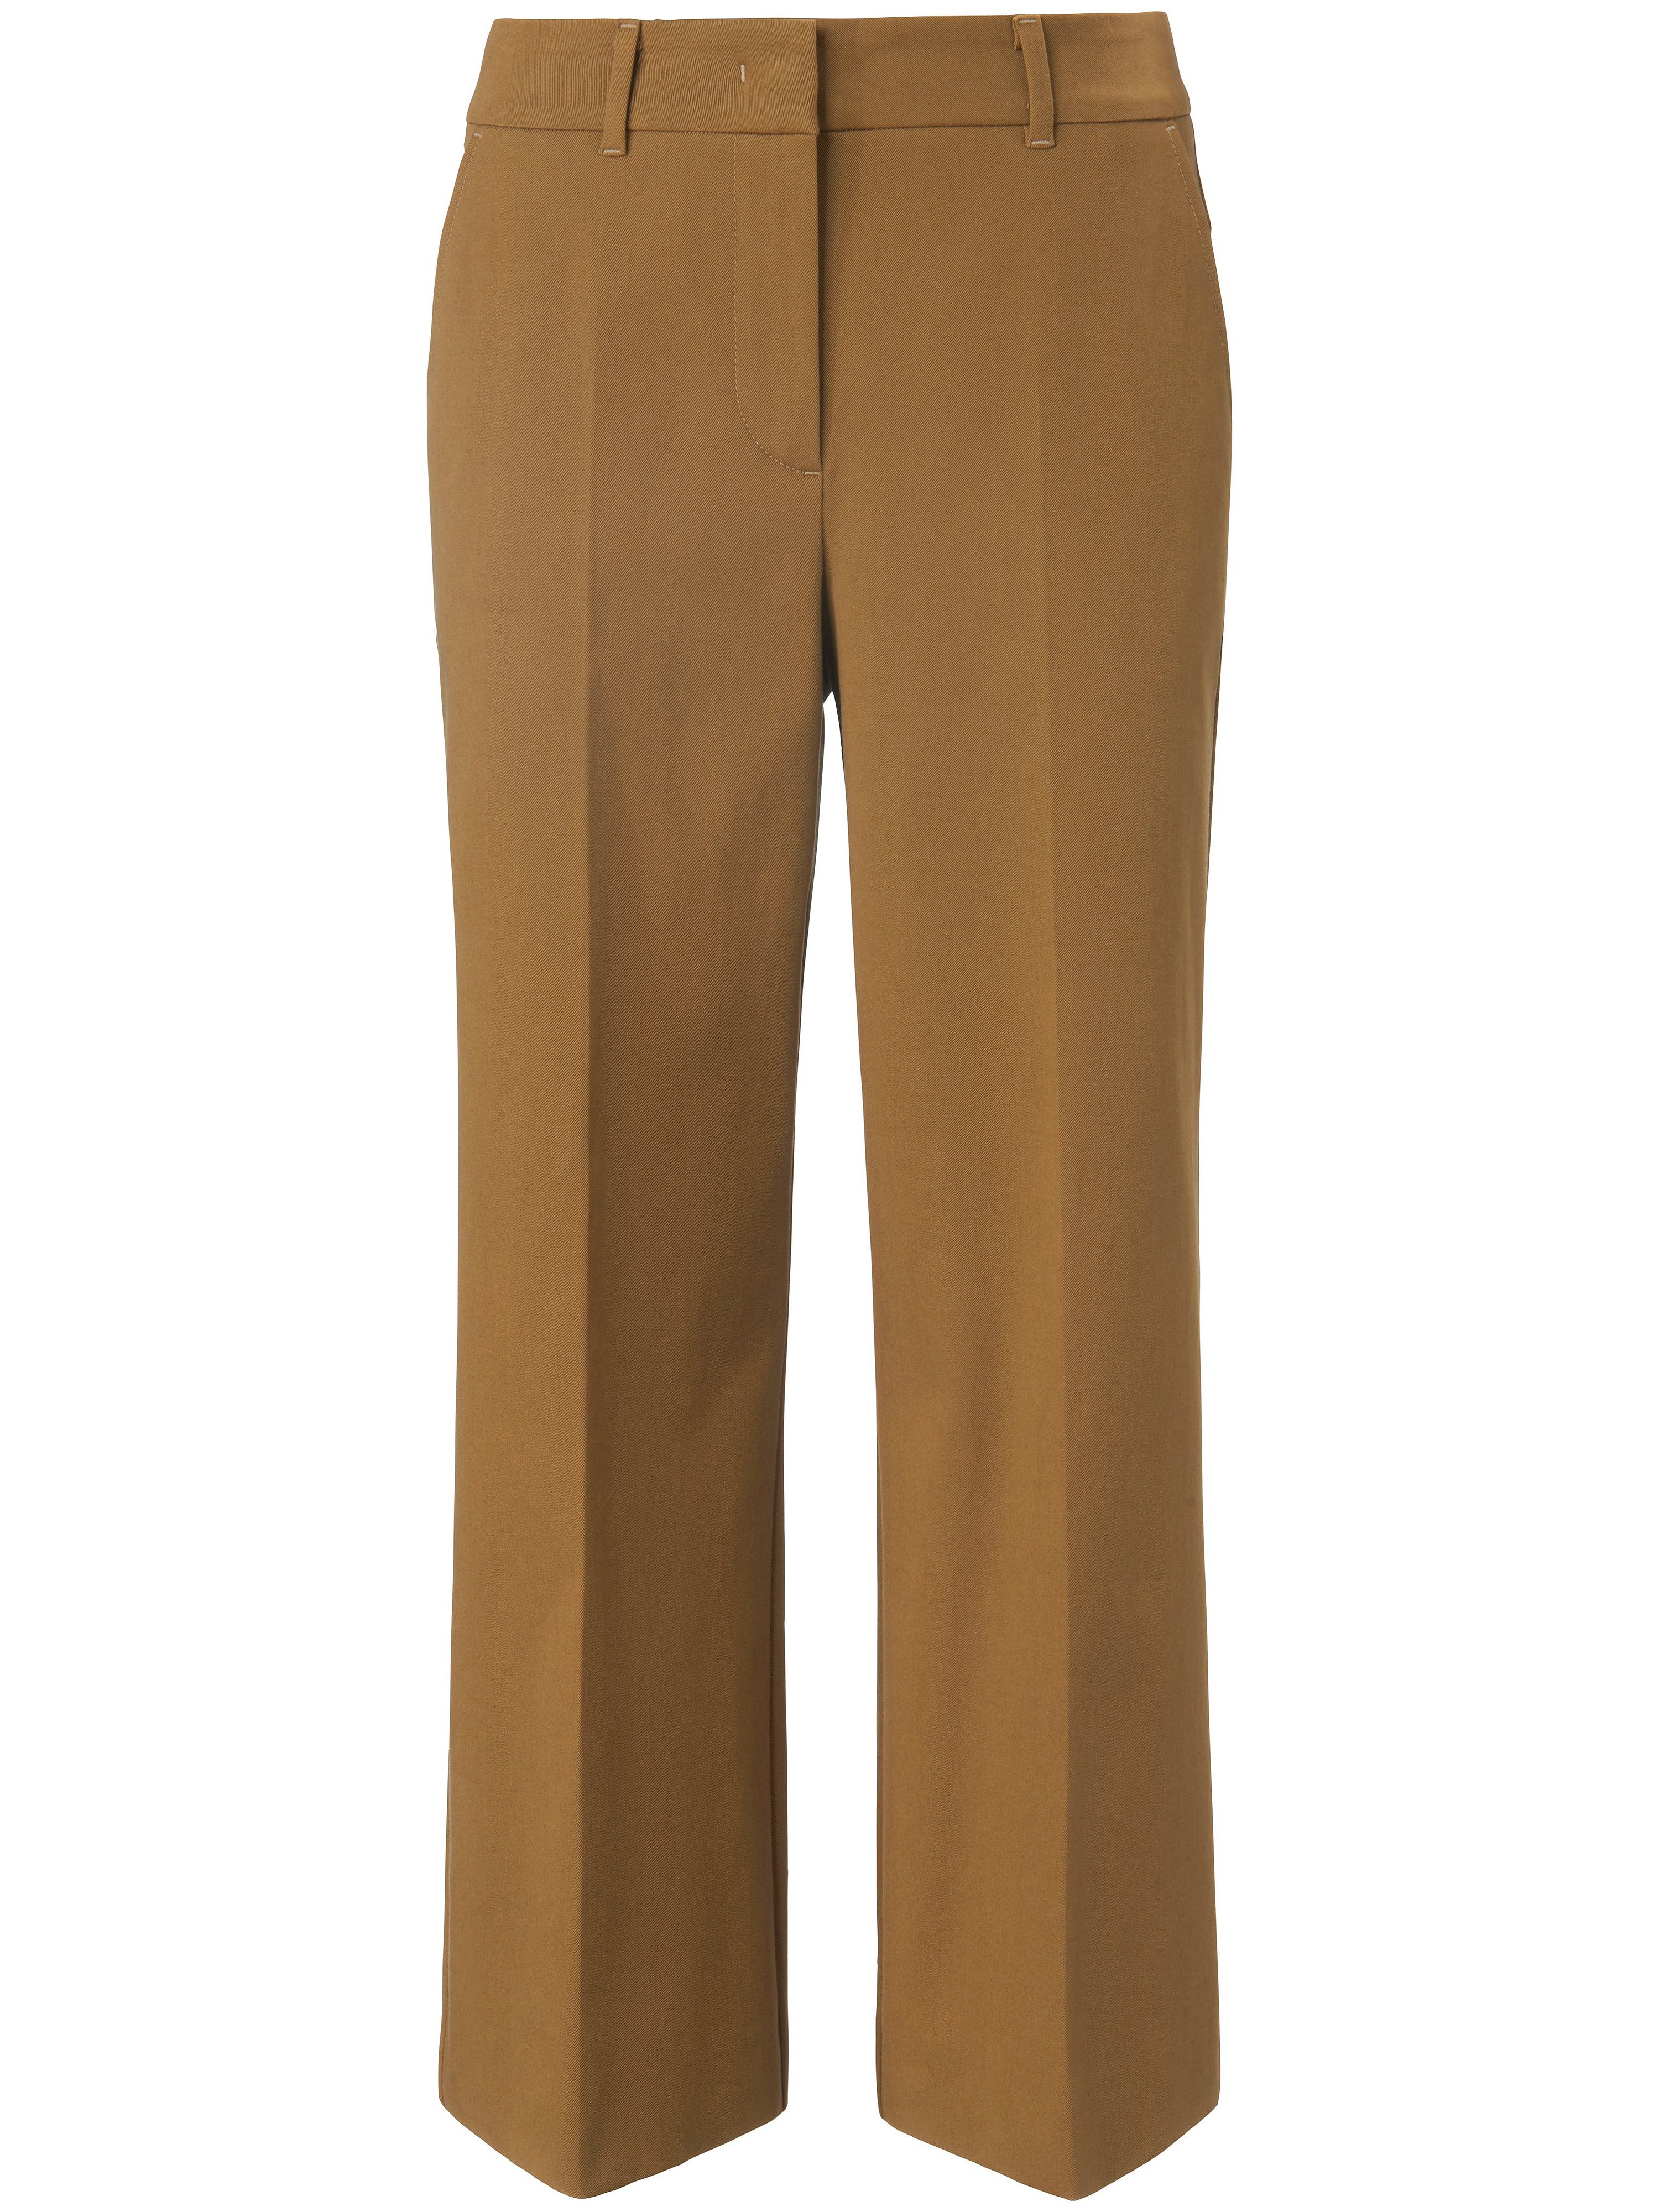 Le pantalon 7/8 coton stretch  St. Emile vert taille 50